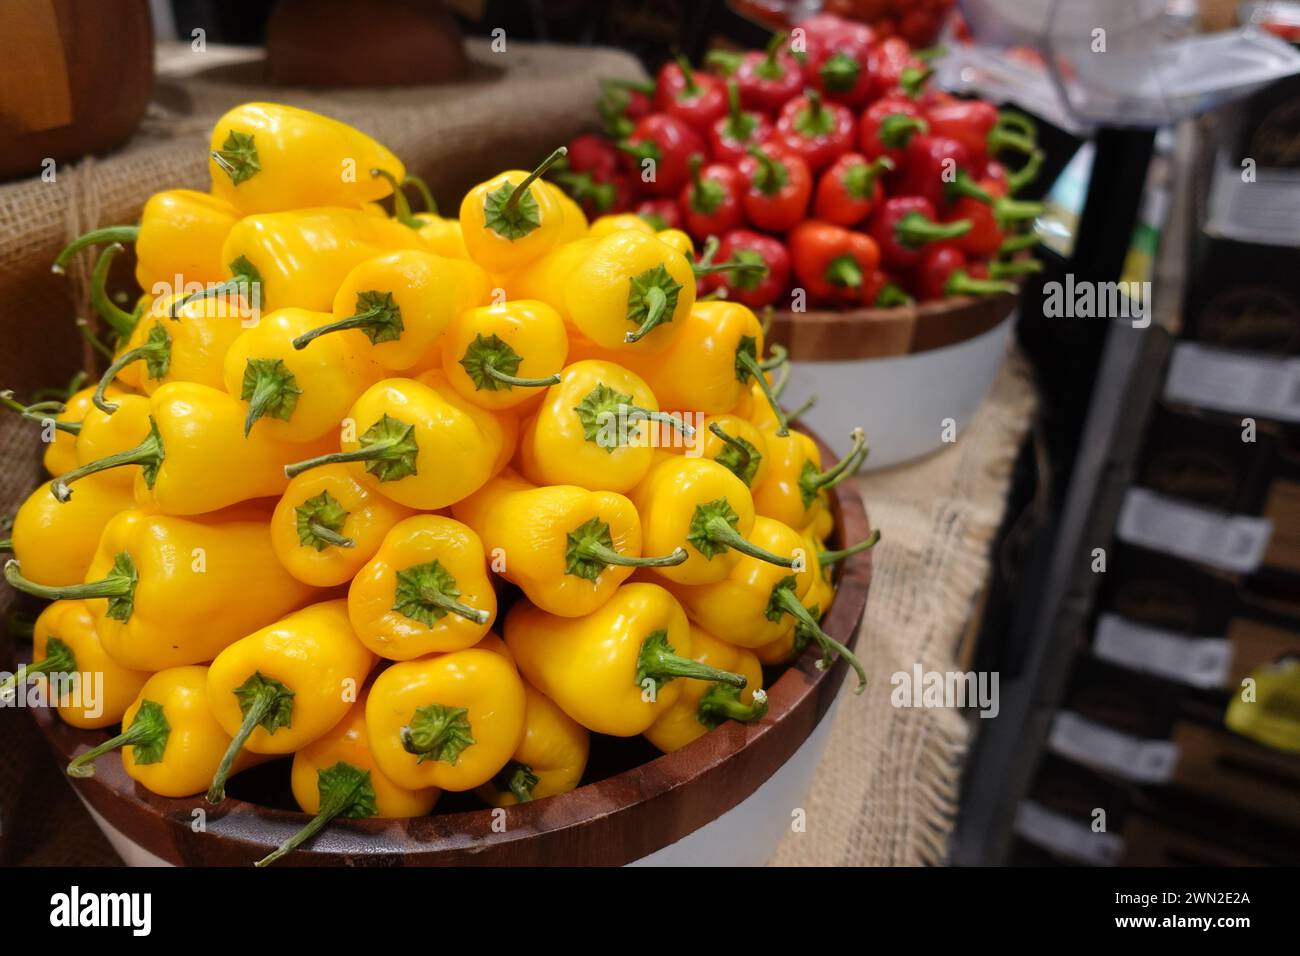 Mini capsicum dolce di vite gialla in vendita all'interno di un negozio di alimentari in Australia, che mette in mostra prodotti vivaci e freschi a disposizione dei clienti. Foto Stock